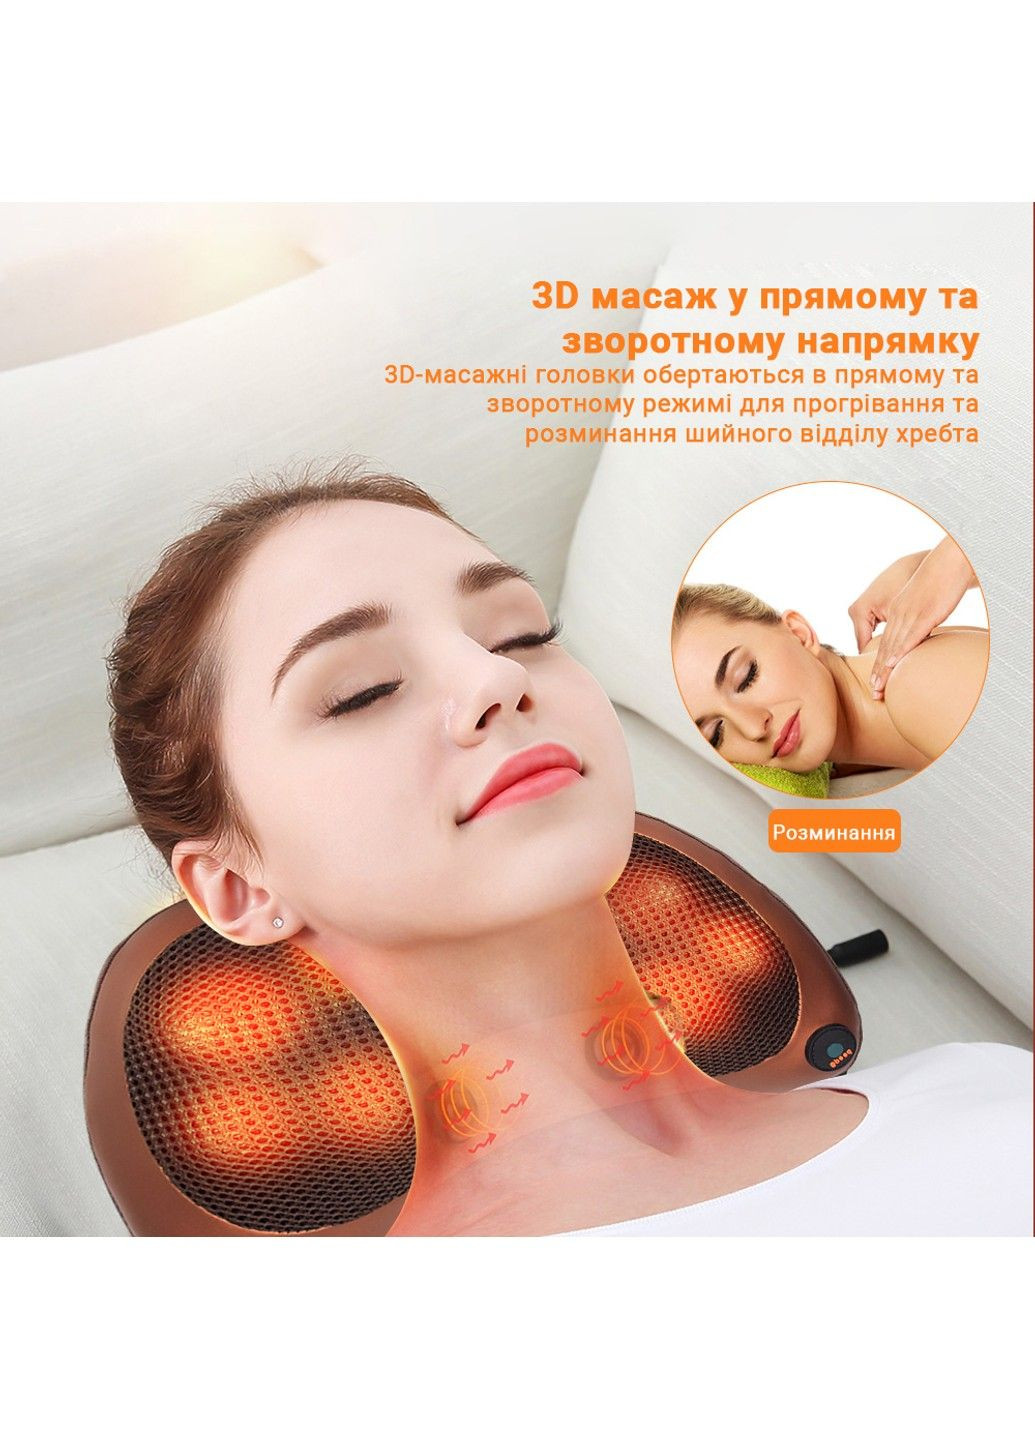 Массажная подушка роликовый инфракрасный массажер для шеи и спины Massage 053P Inspire (289355091)